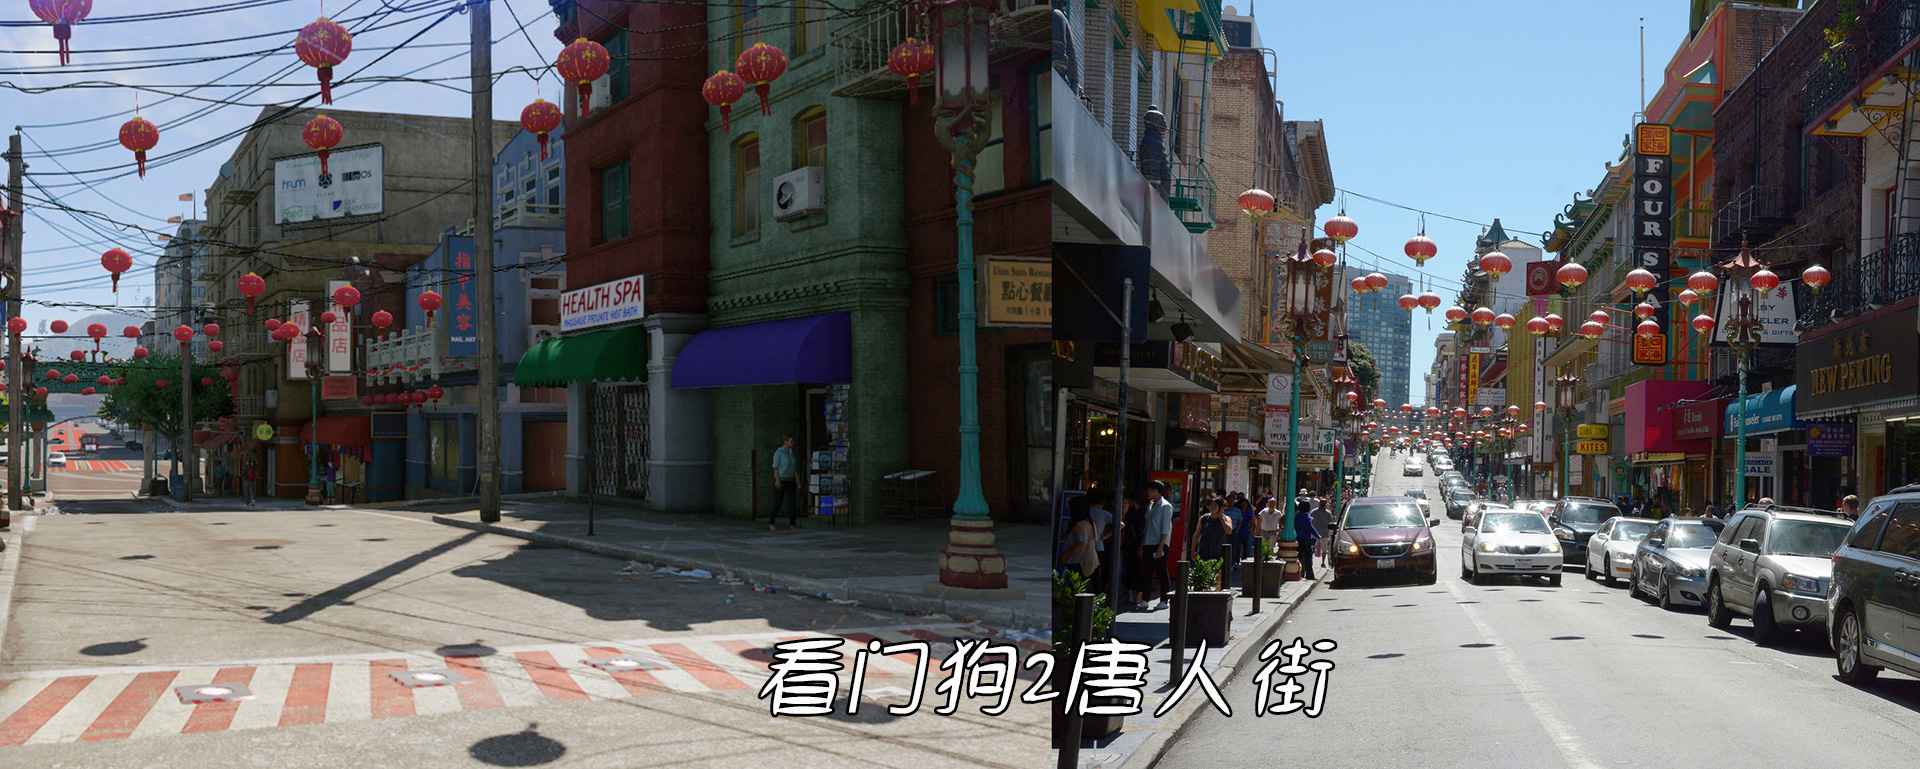 gta5唐人街图片